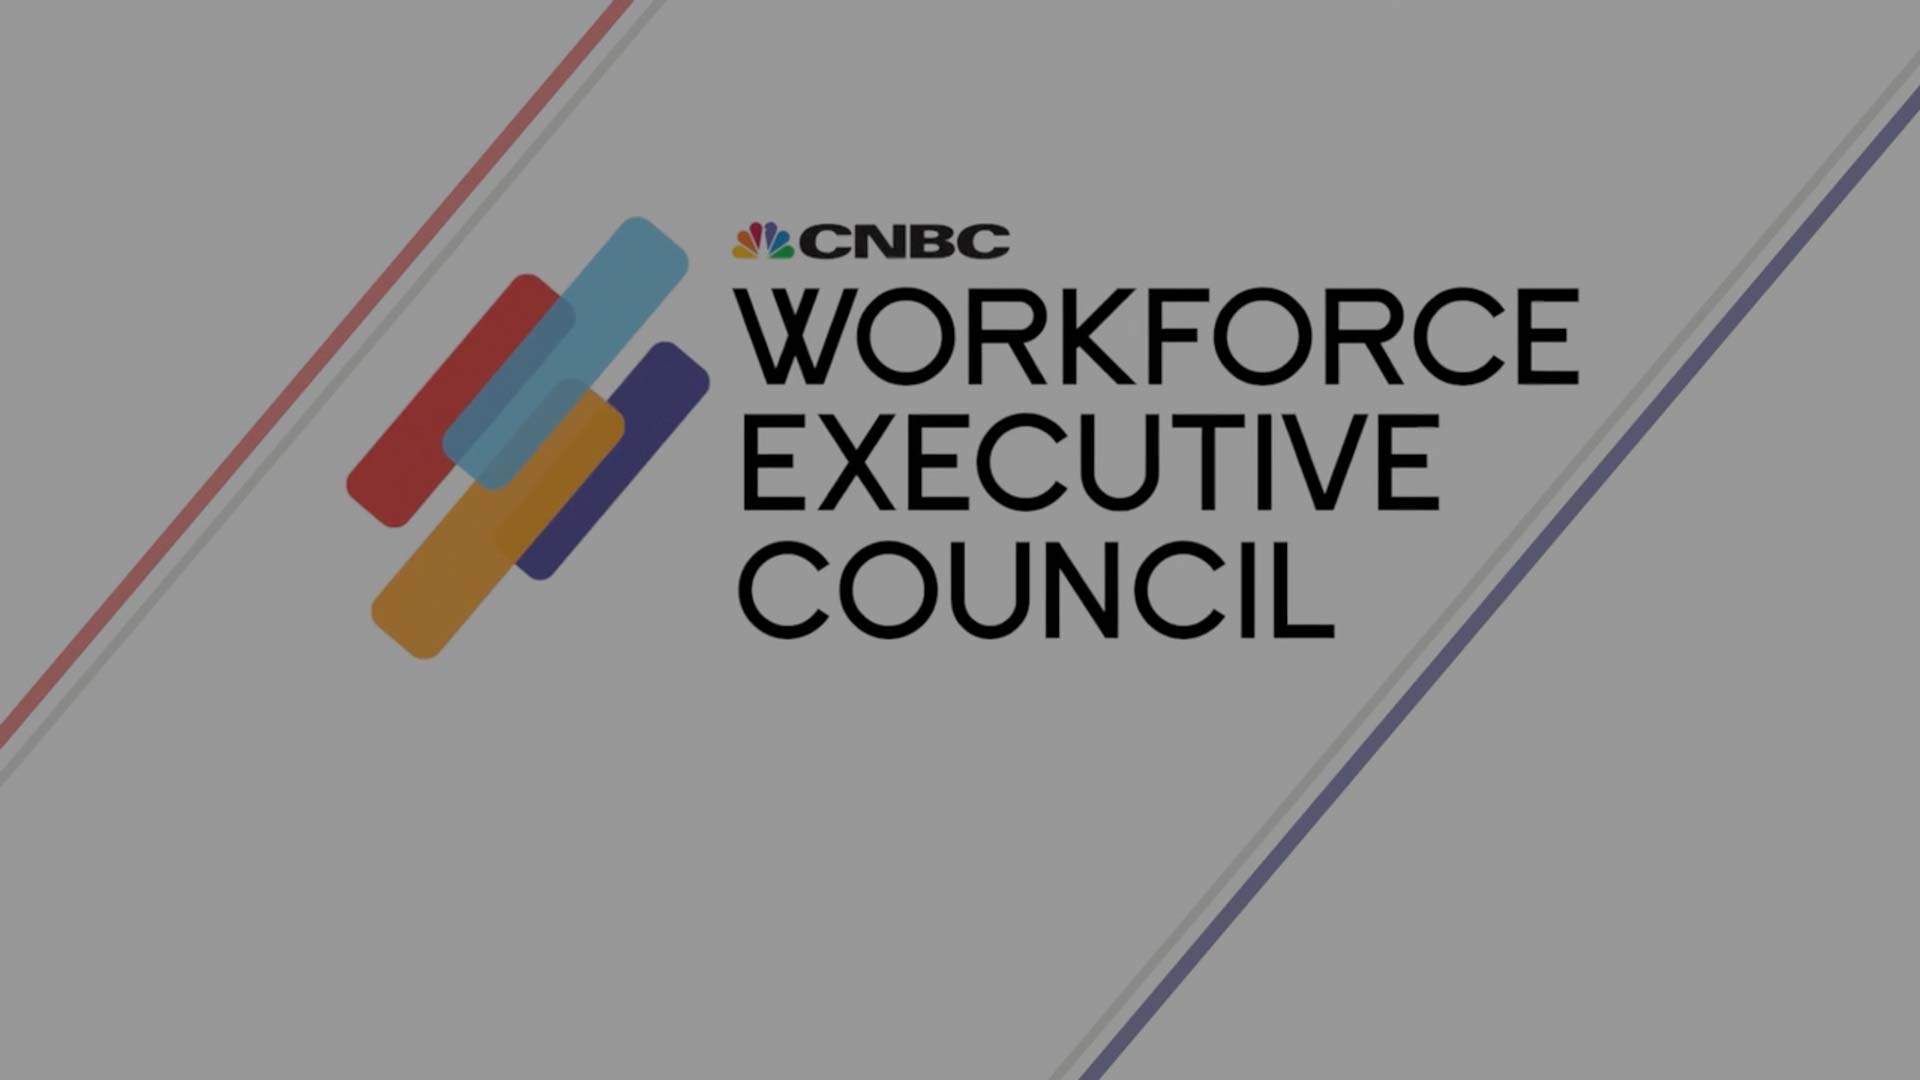 CNBC Workforce Executive Council CNBC Councils